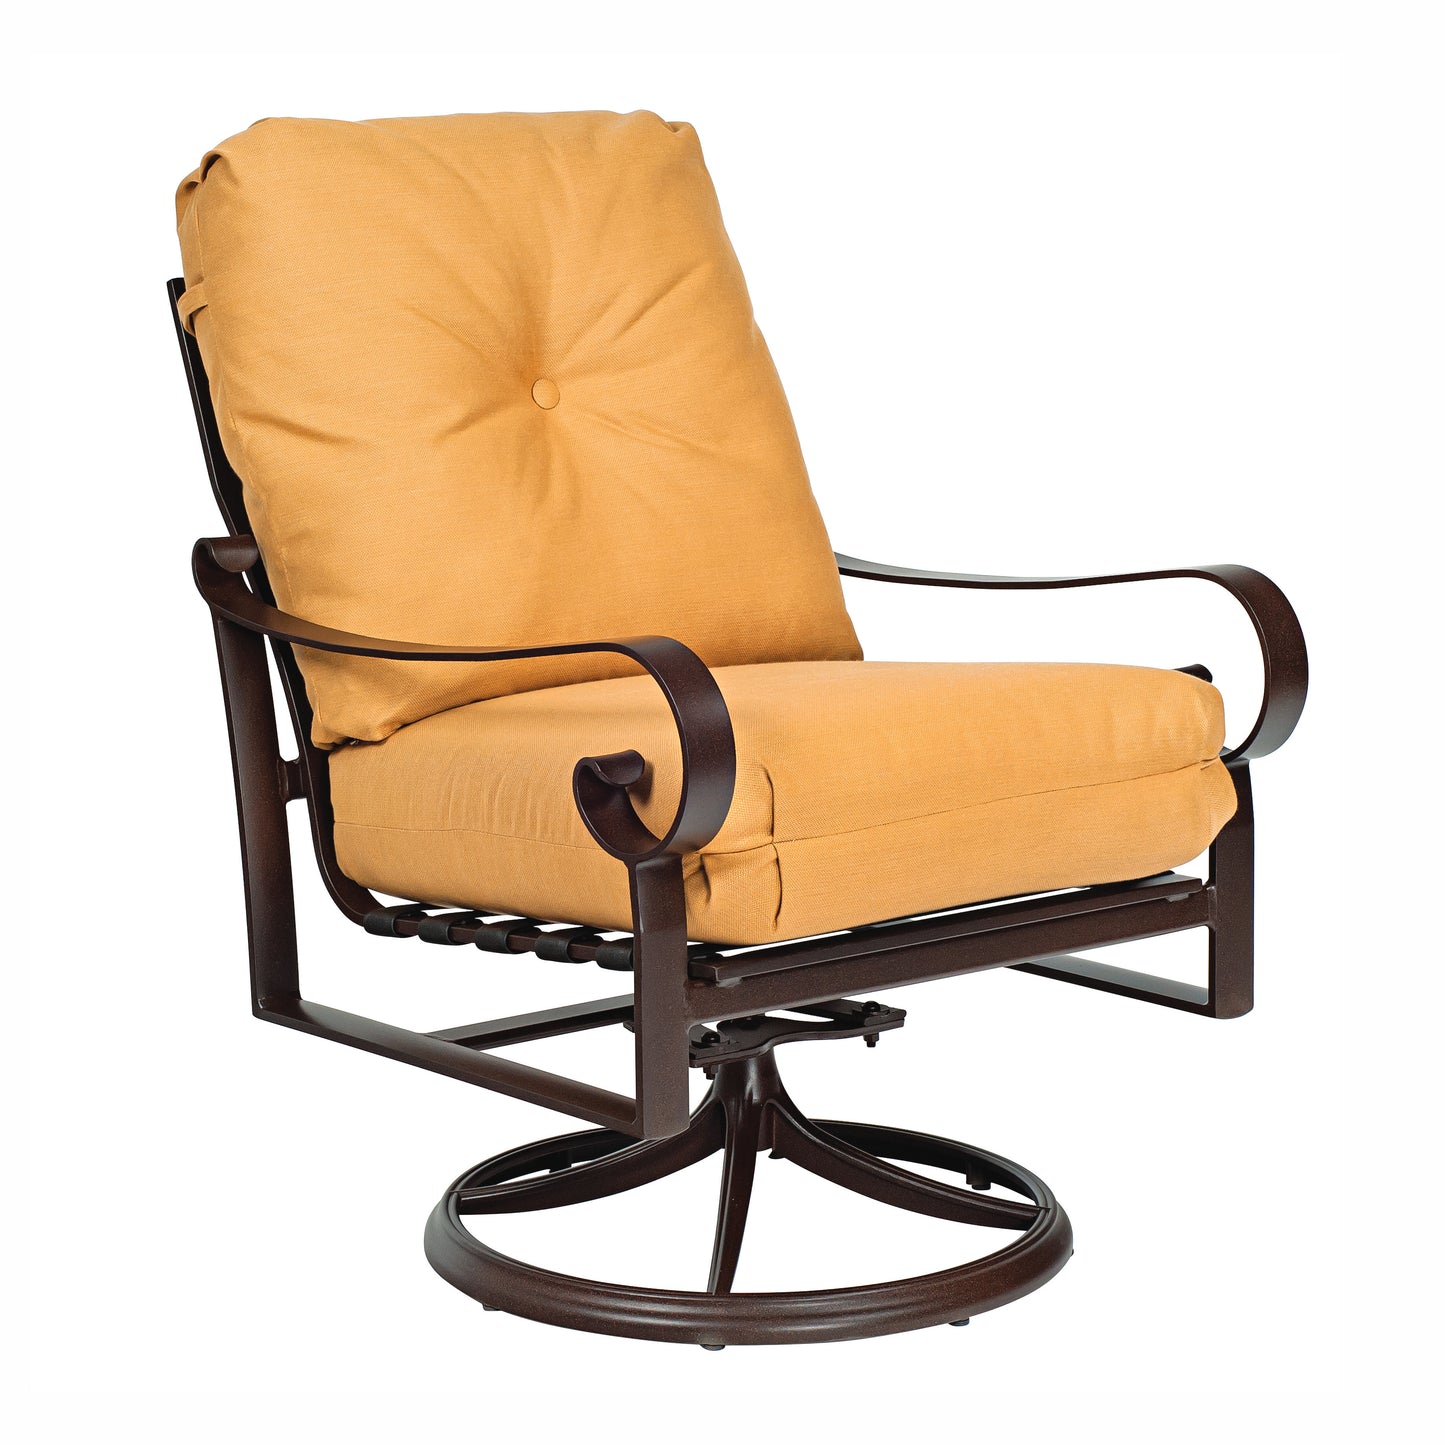 Woodard Belden Cushion Swivel Rocking Lounge Chair 690477M - Textured Black / Canvas Heather Beige